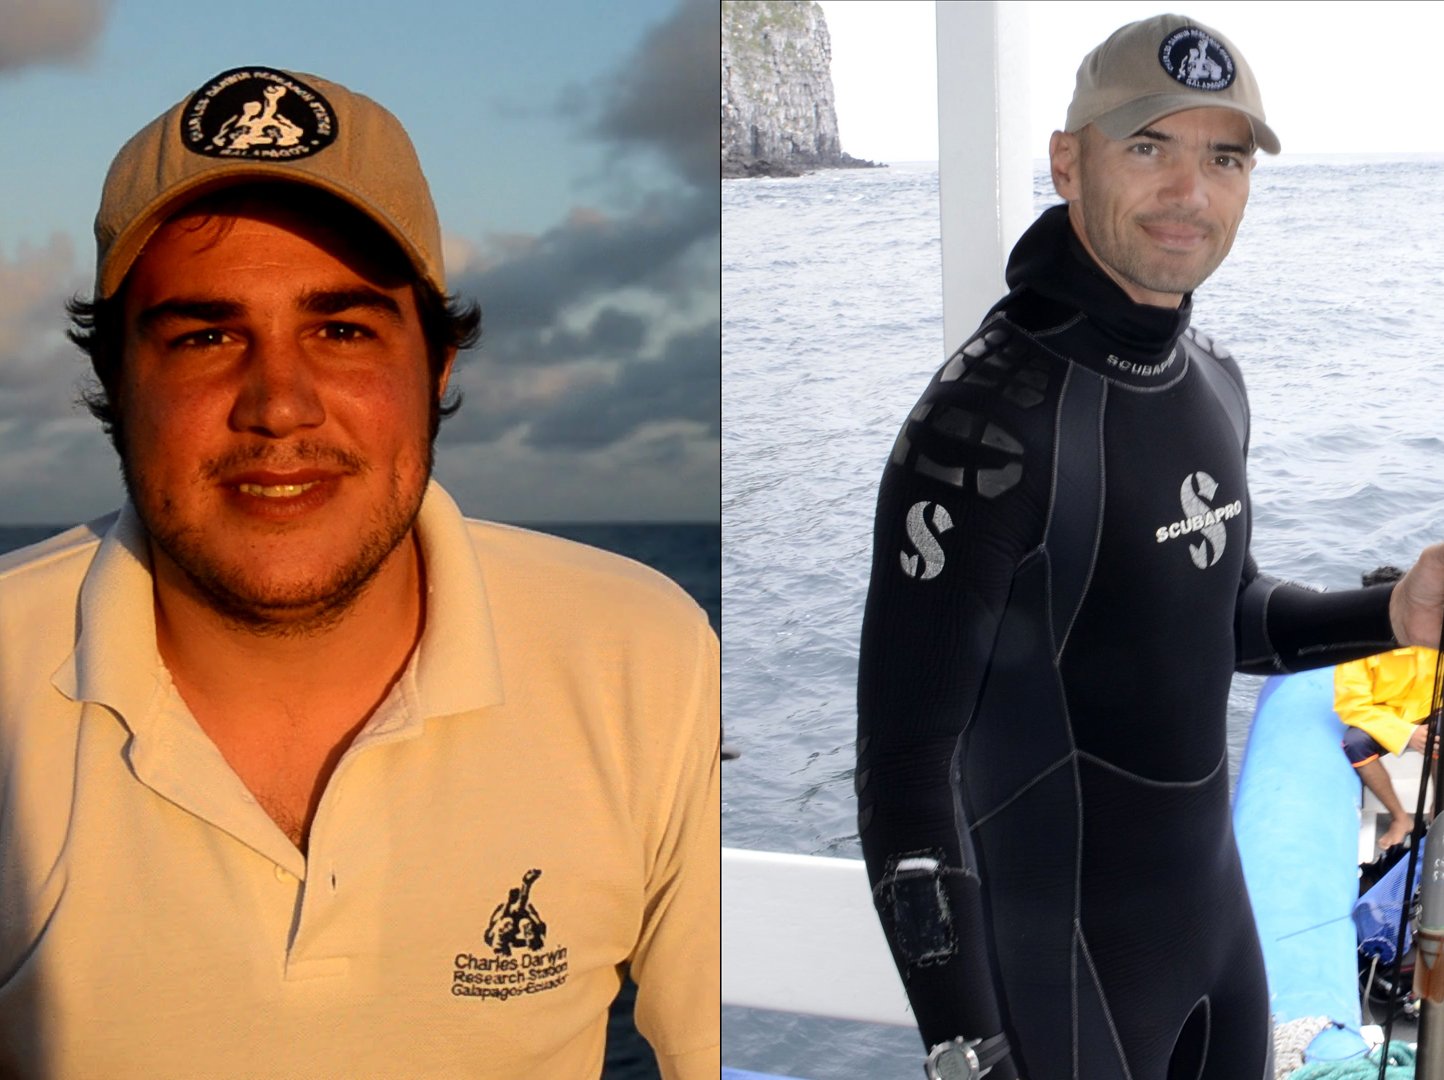 Researchers Pelayo Salinas de León and David Acuna recently began their expedition.